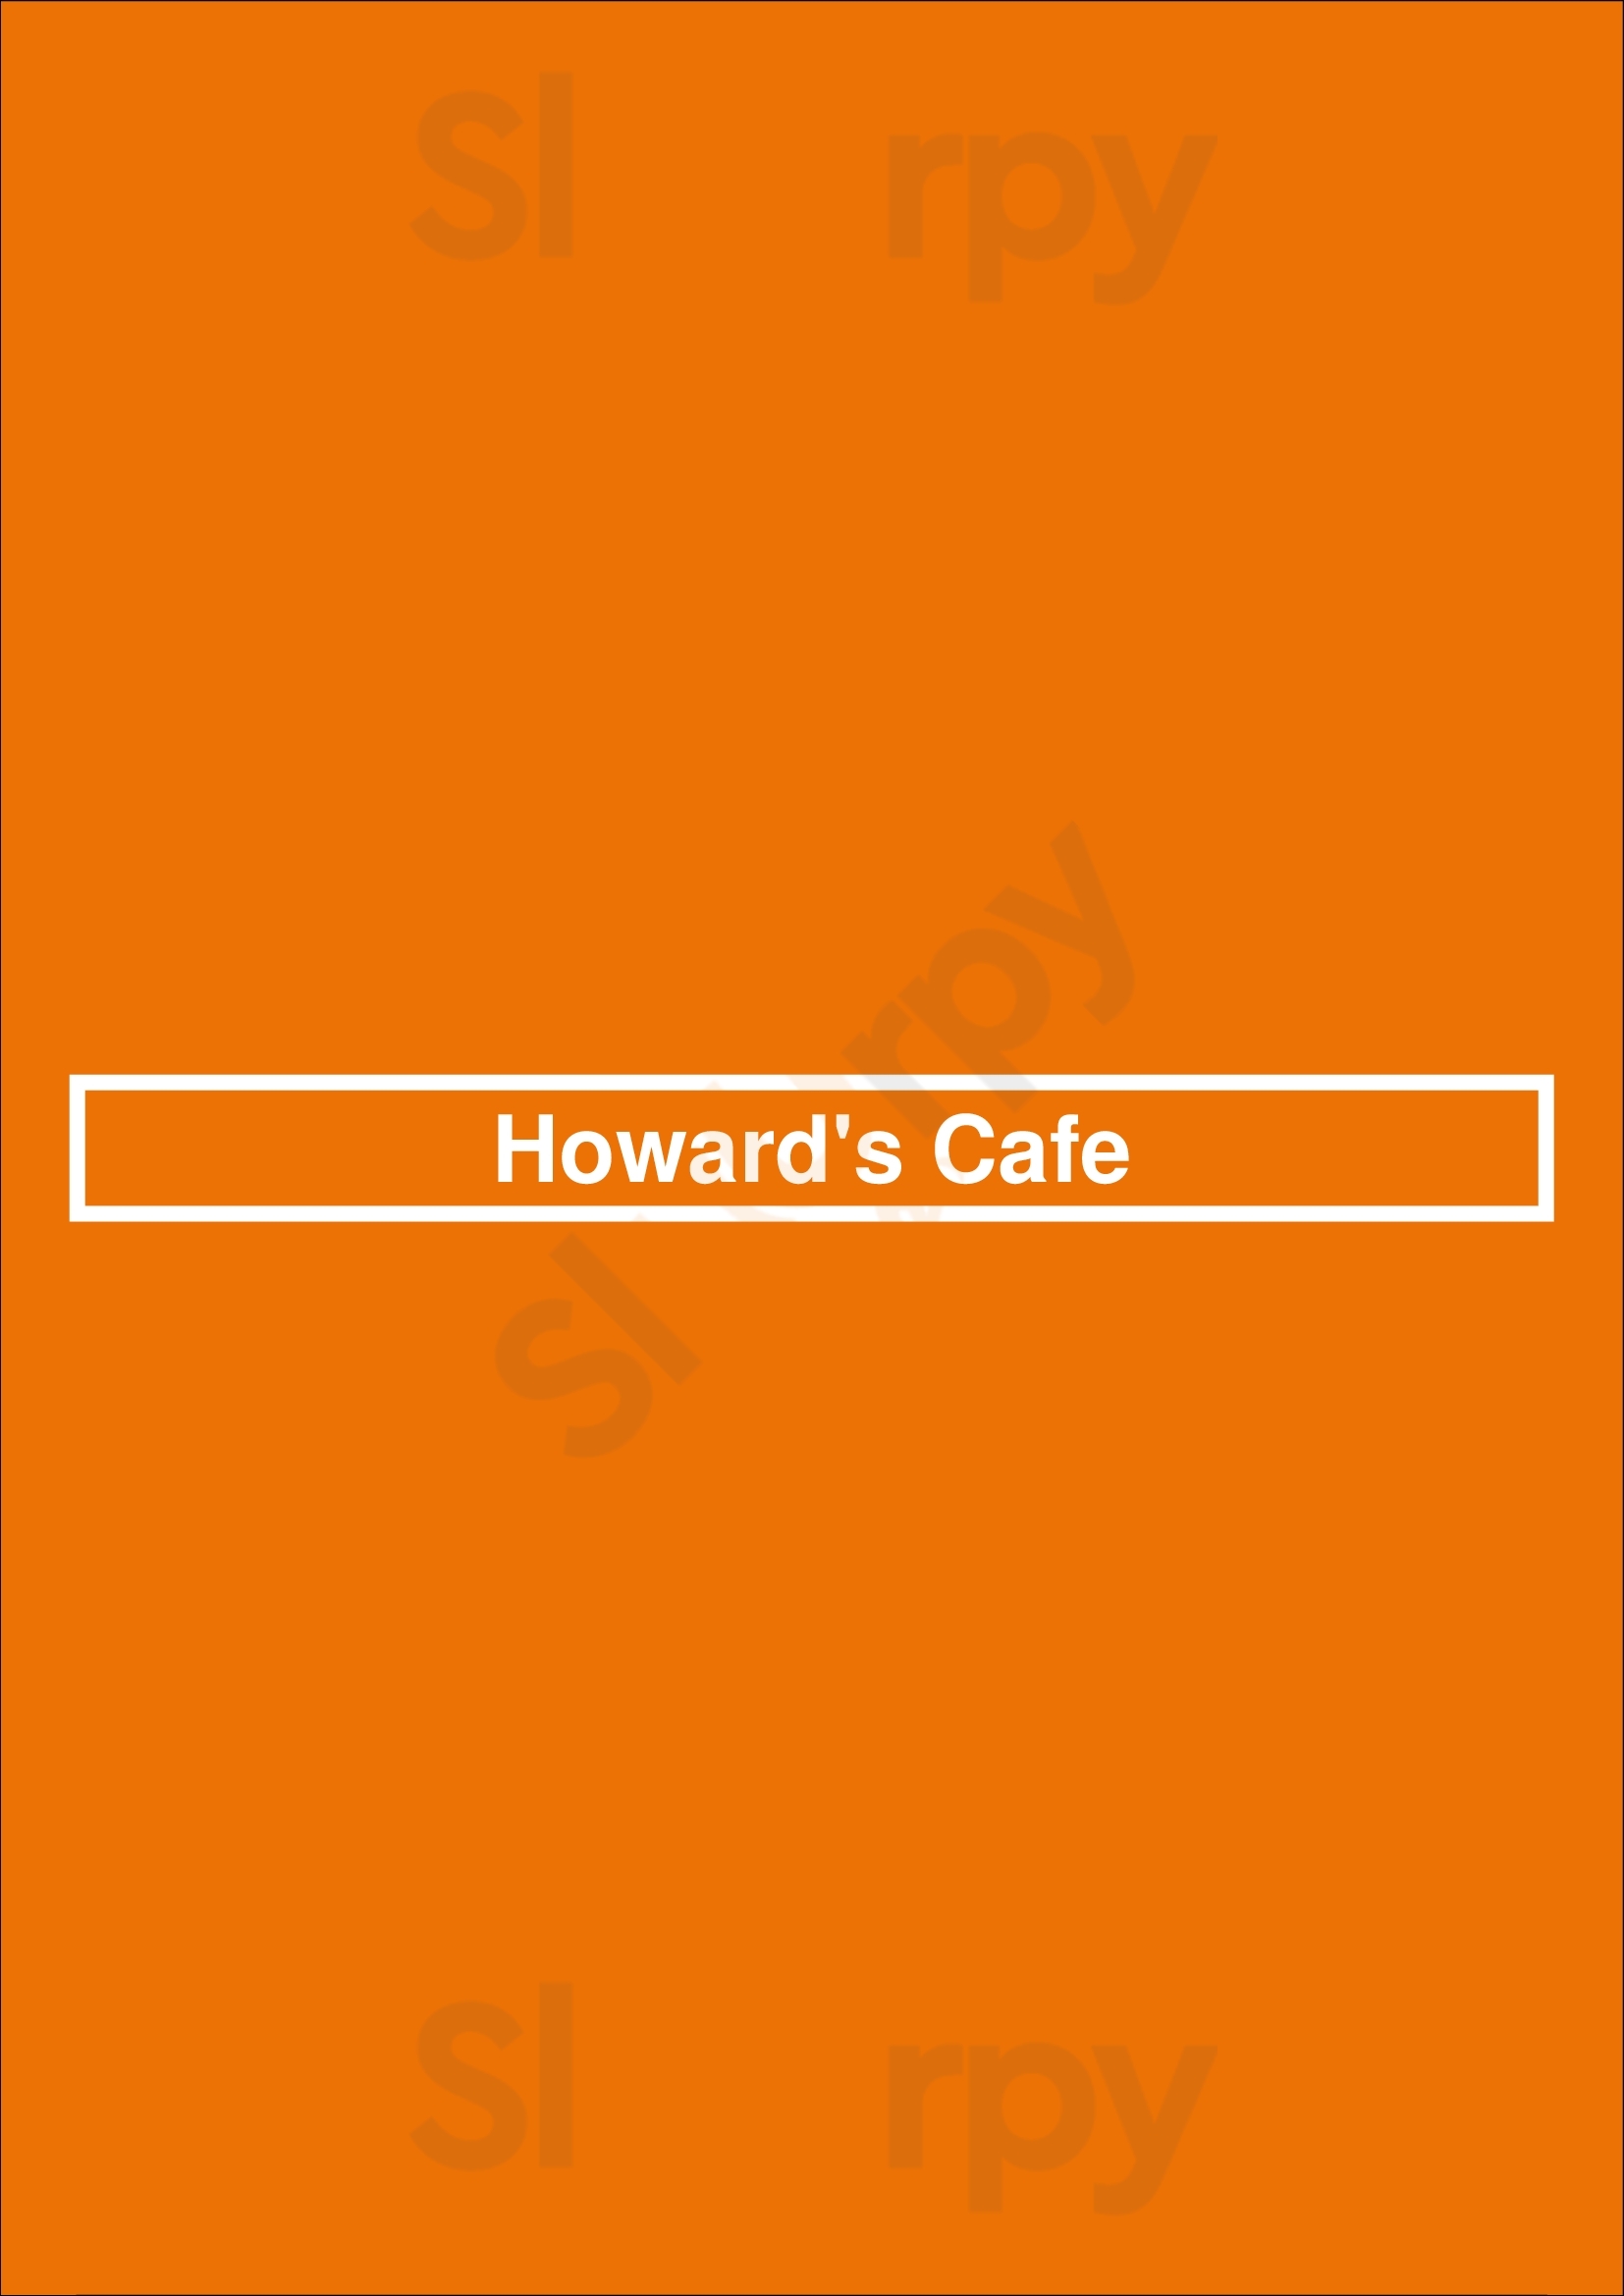 Howard's Cafe Los Angeles Menu - 1